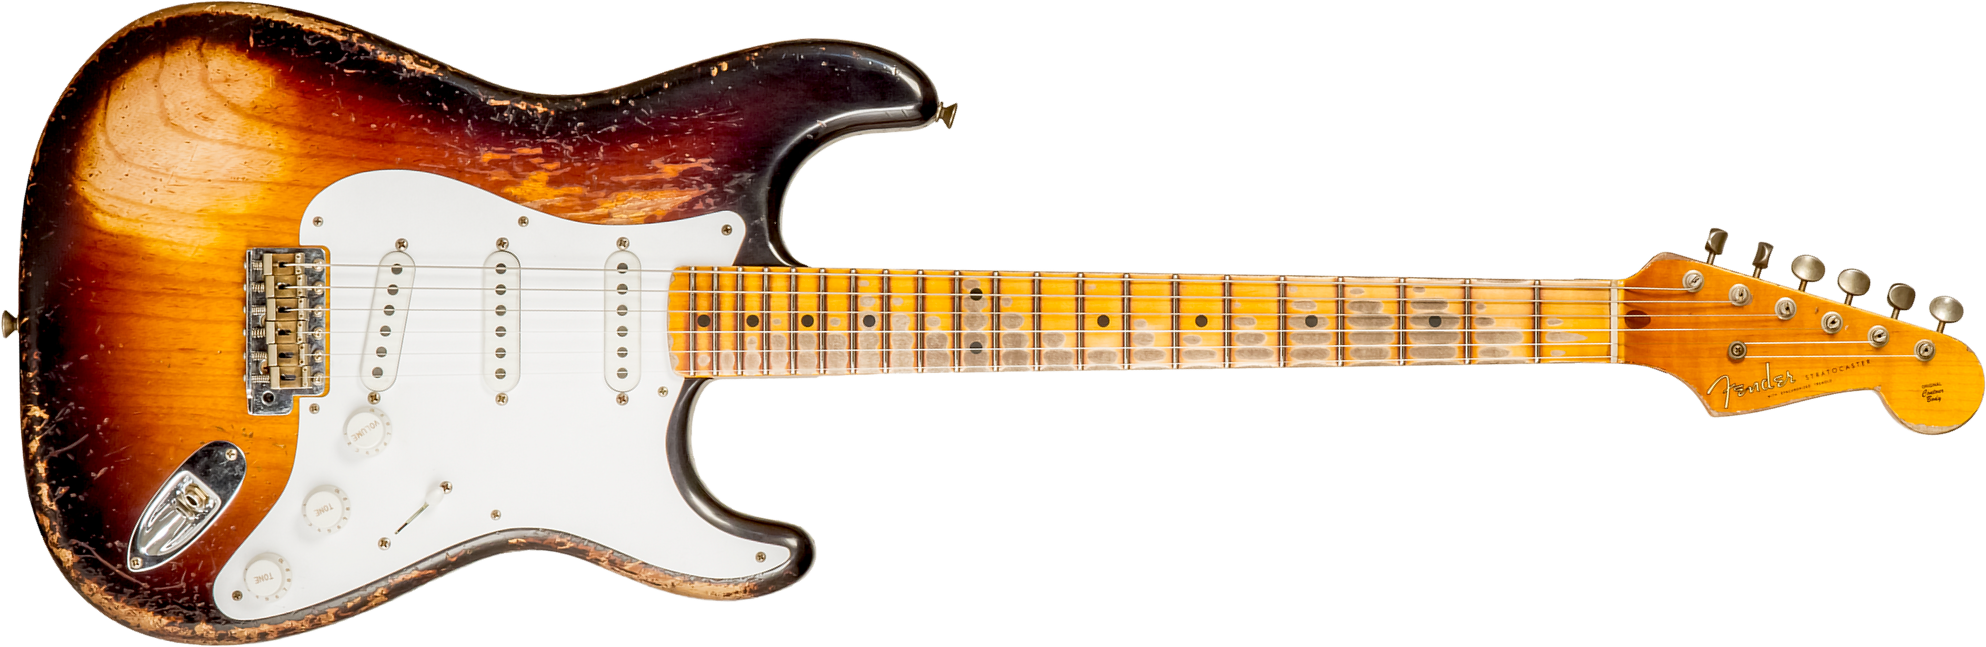 Fender Custom Shop Strat 1954 70th Anniv. Mn #xn4378 - Super Heavy Relic 2-color Sunburst - E-Gitarre in Str-Form - Main picture